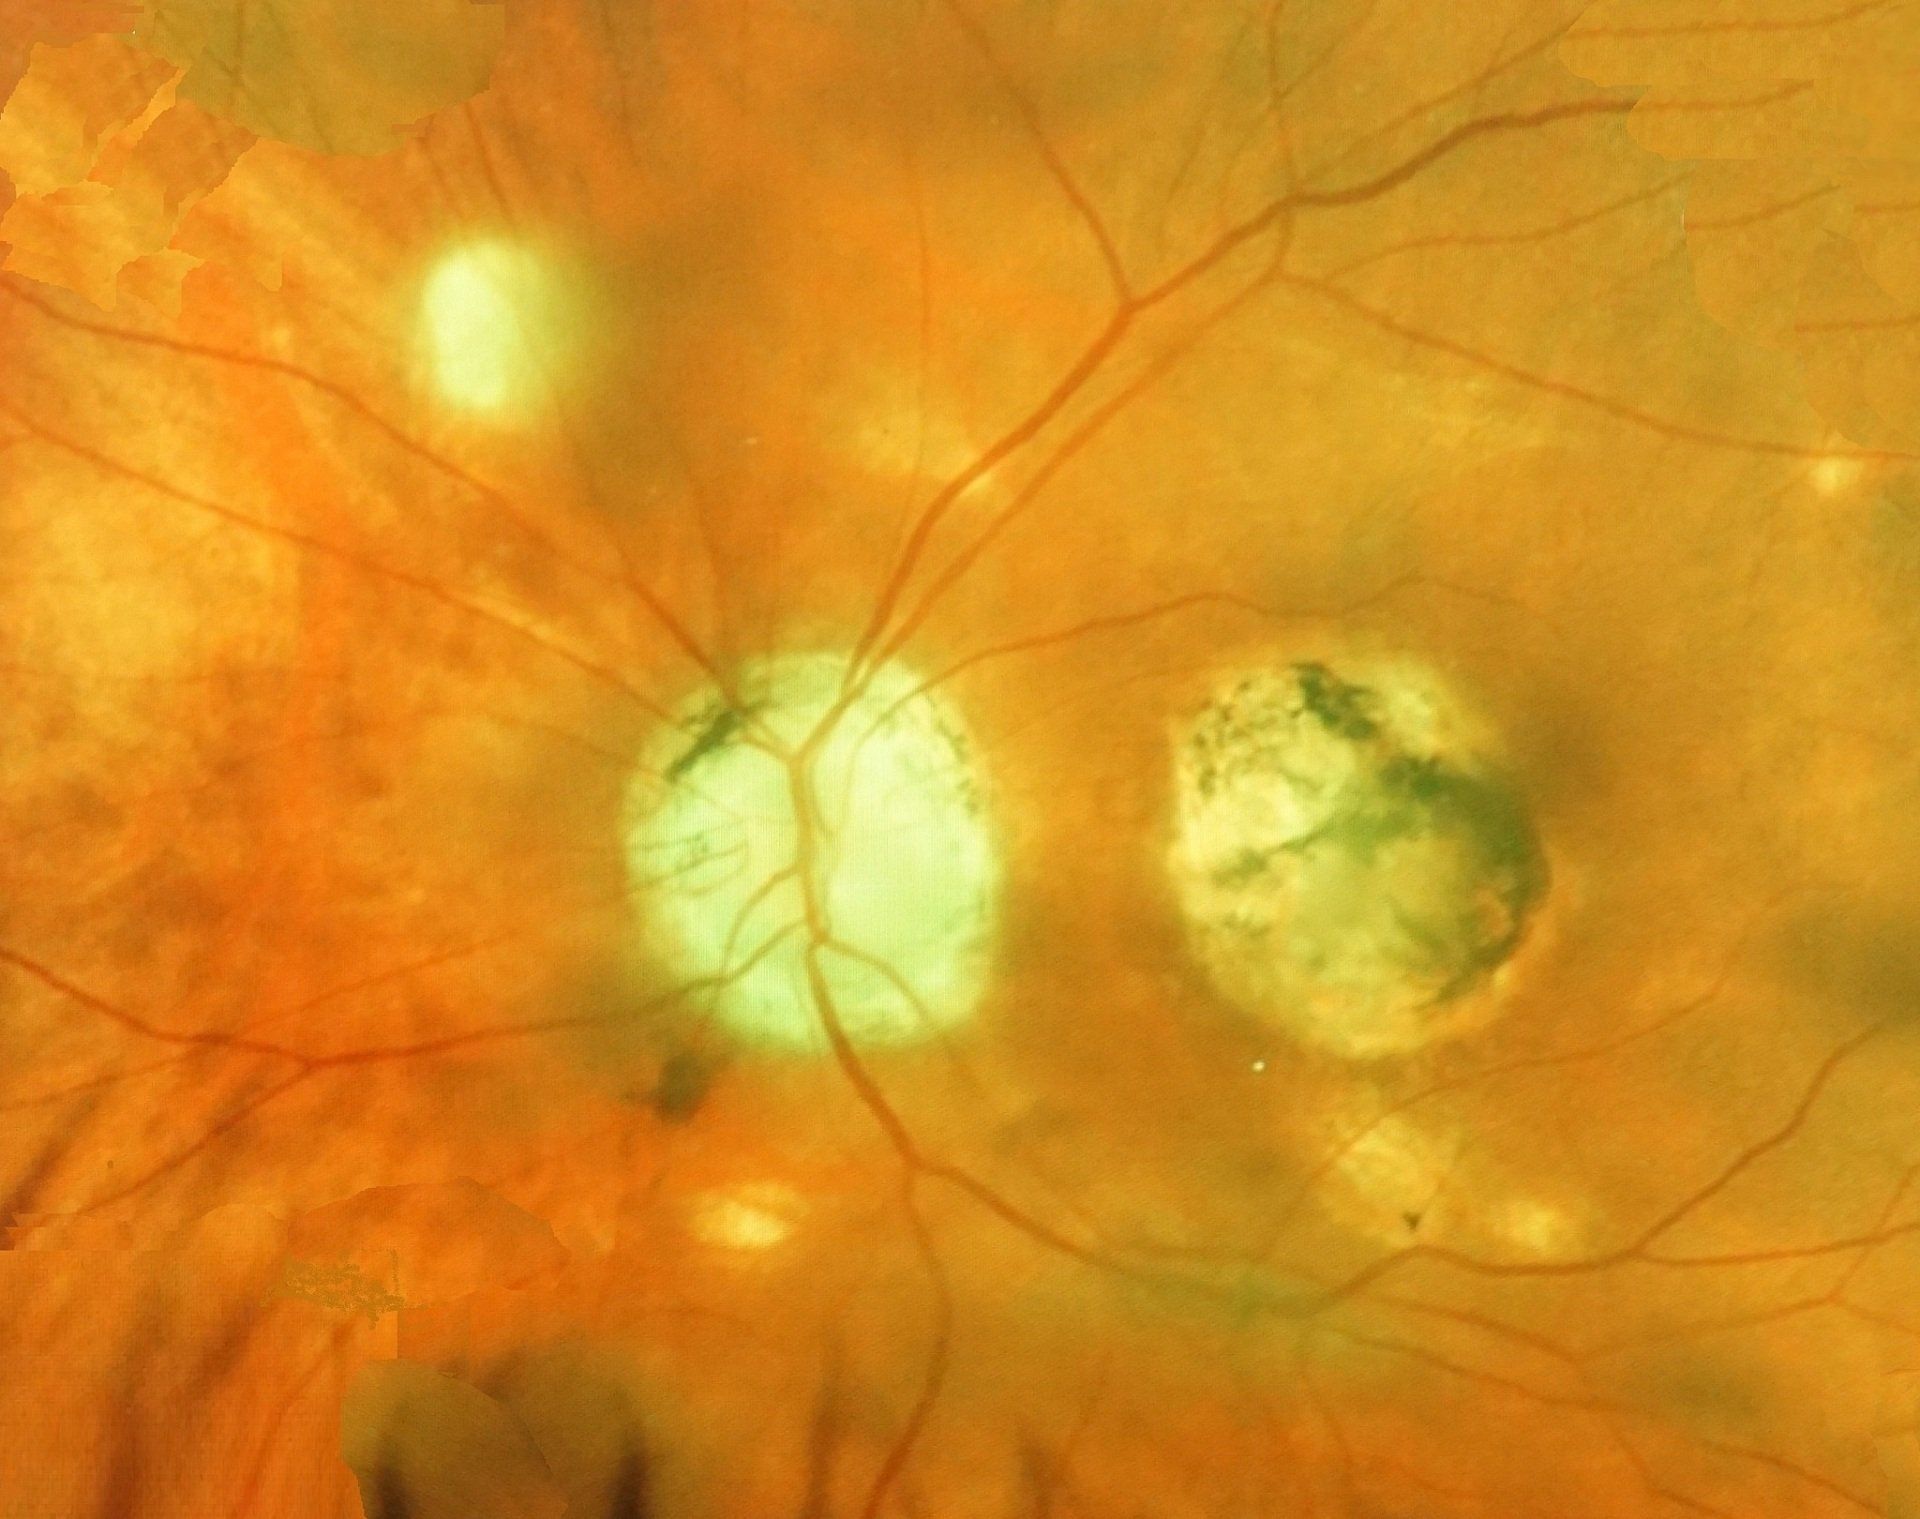 Ocular histoplasmosis